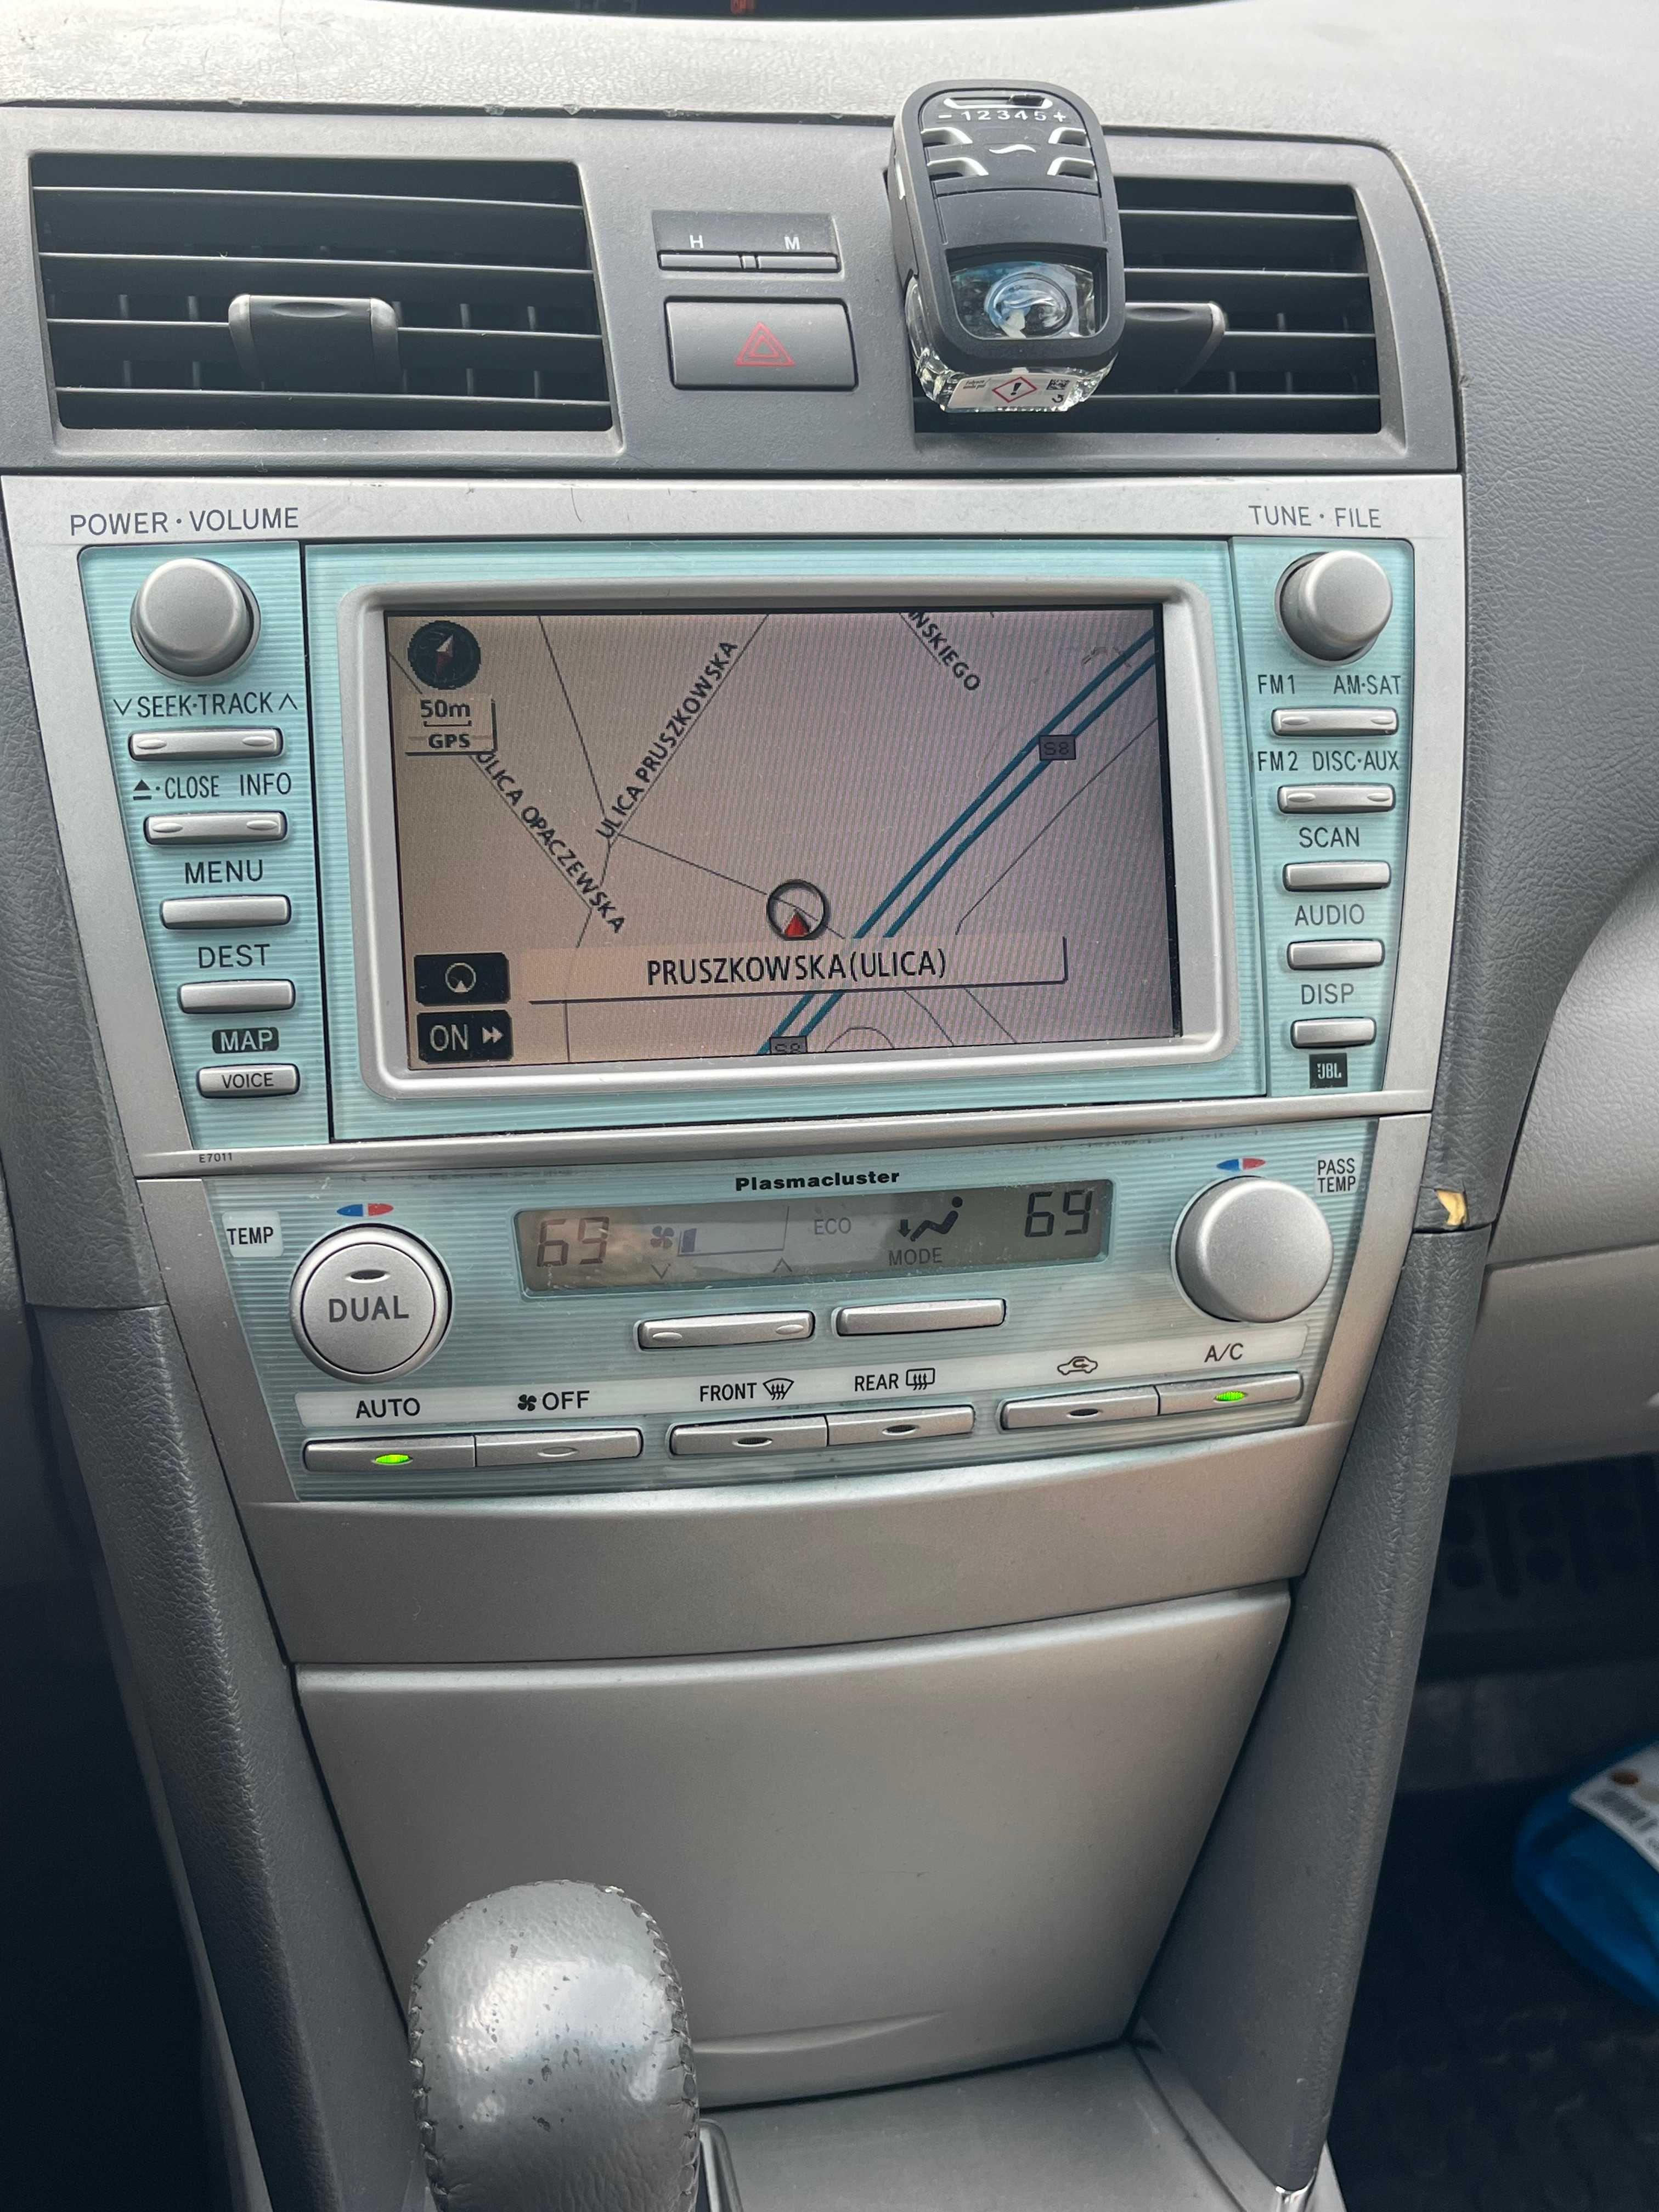 Toyota Camry 2,4 Hybrid 2008r. navigacja JBL